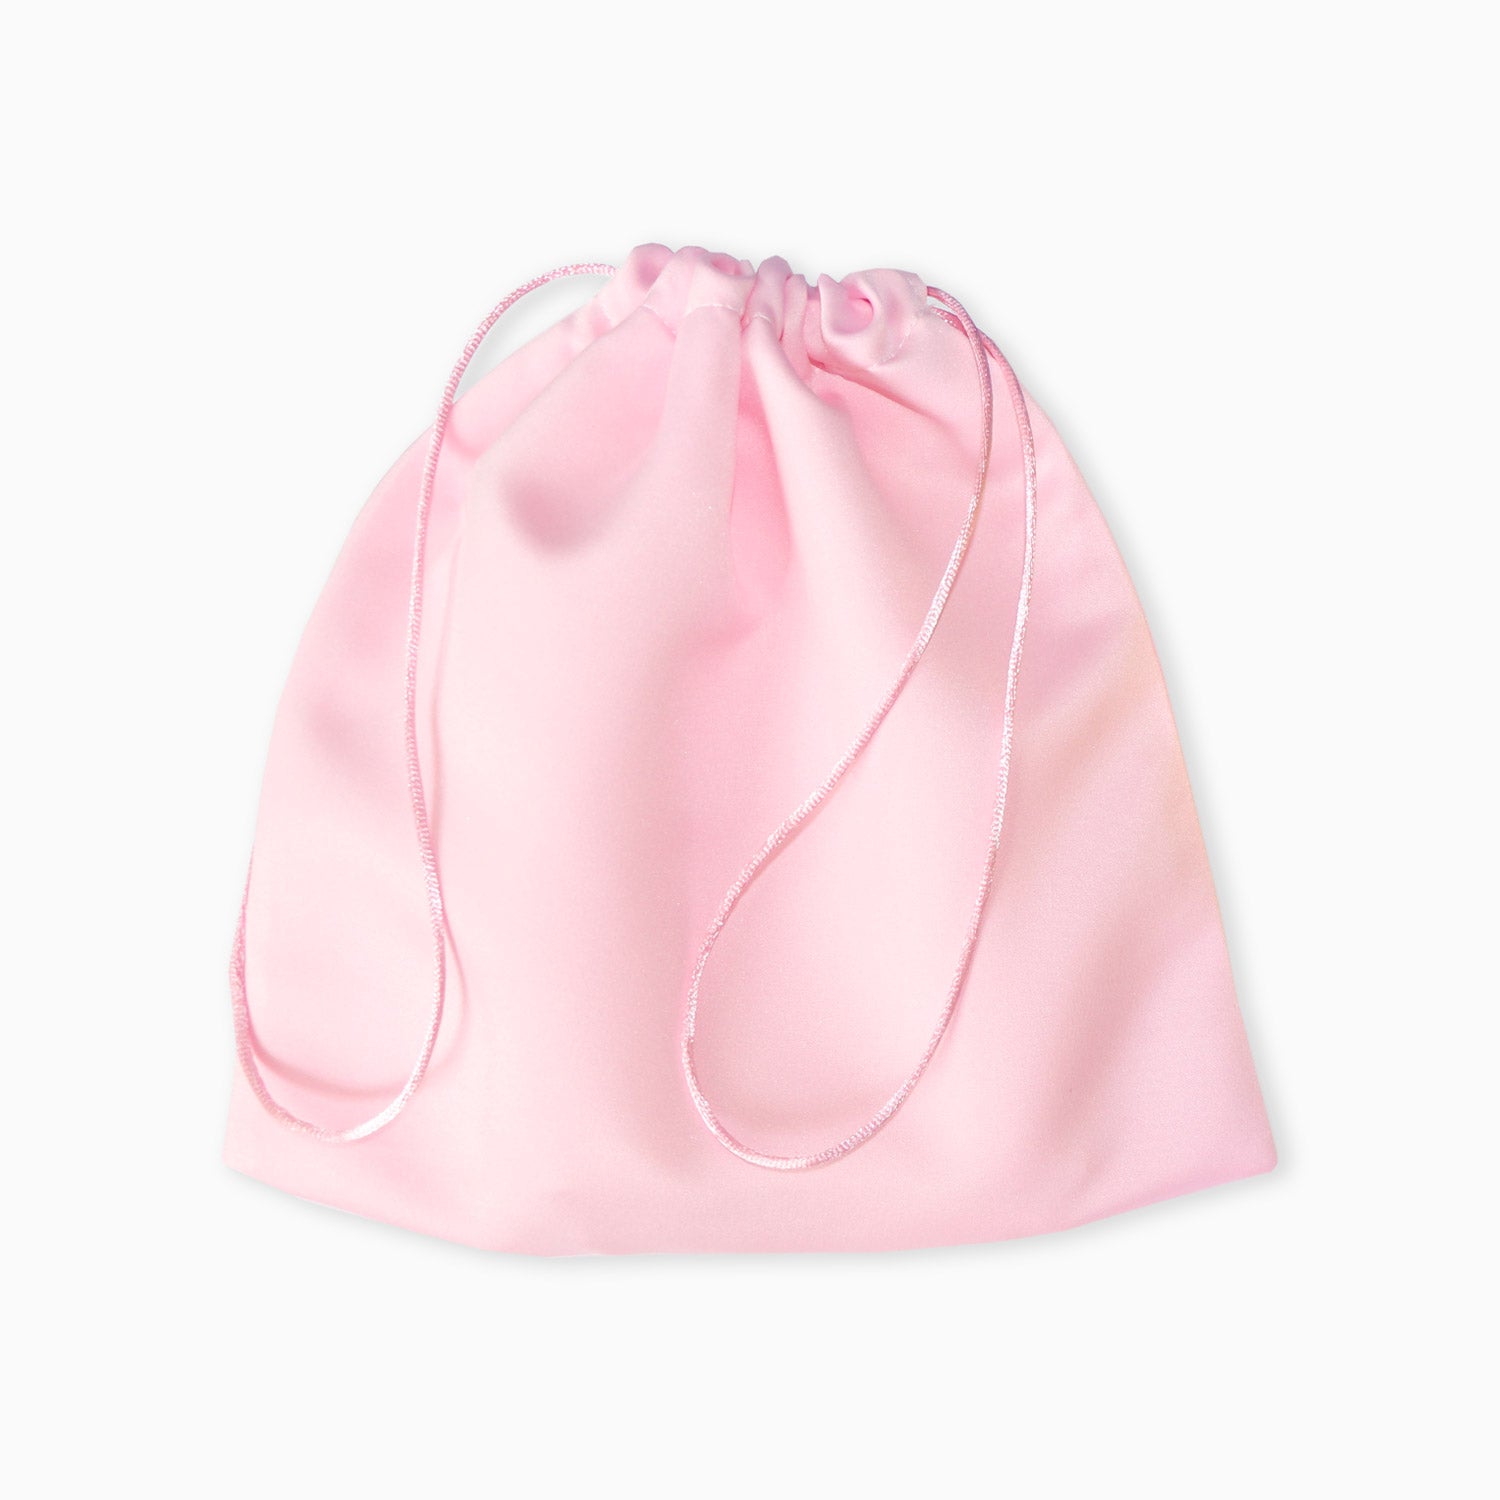 http://mydustbag.com/cdn/shop/products/MYDUSTBAG-blank-dust-bag-satin-silk-pink.jpg?v=1633904685